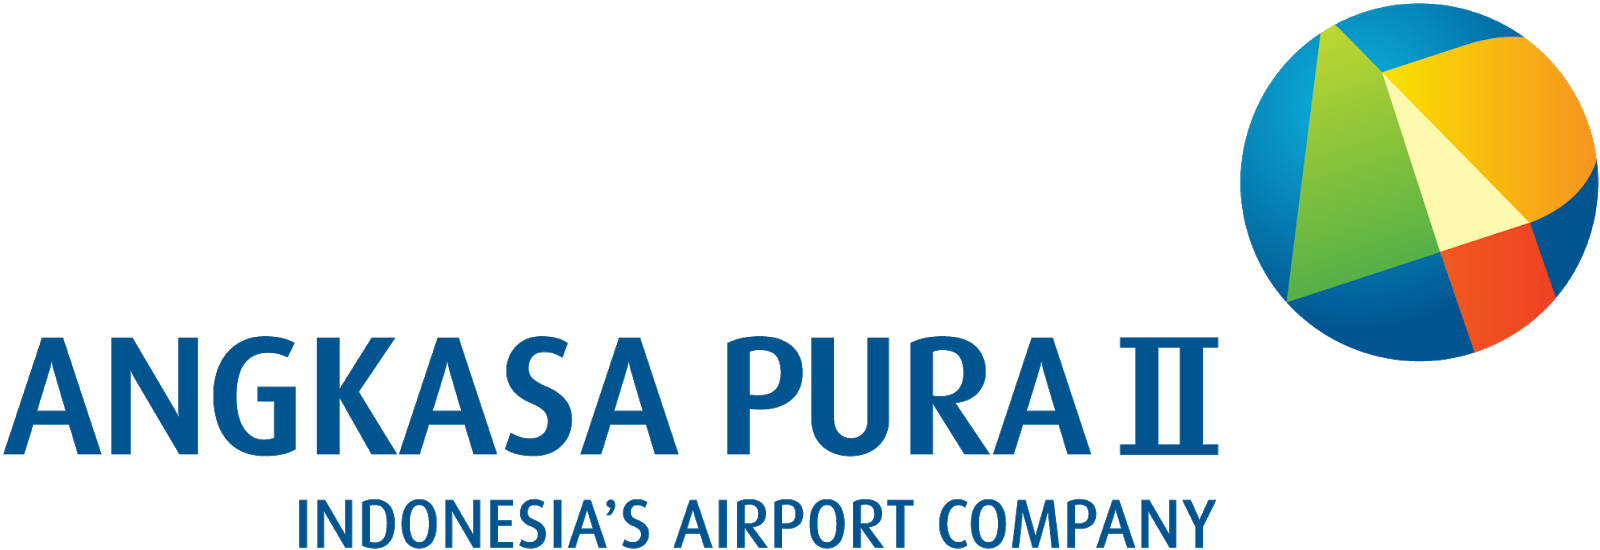 Angkasa_Pura_II_logo_2014